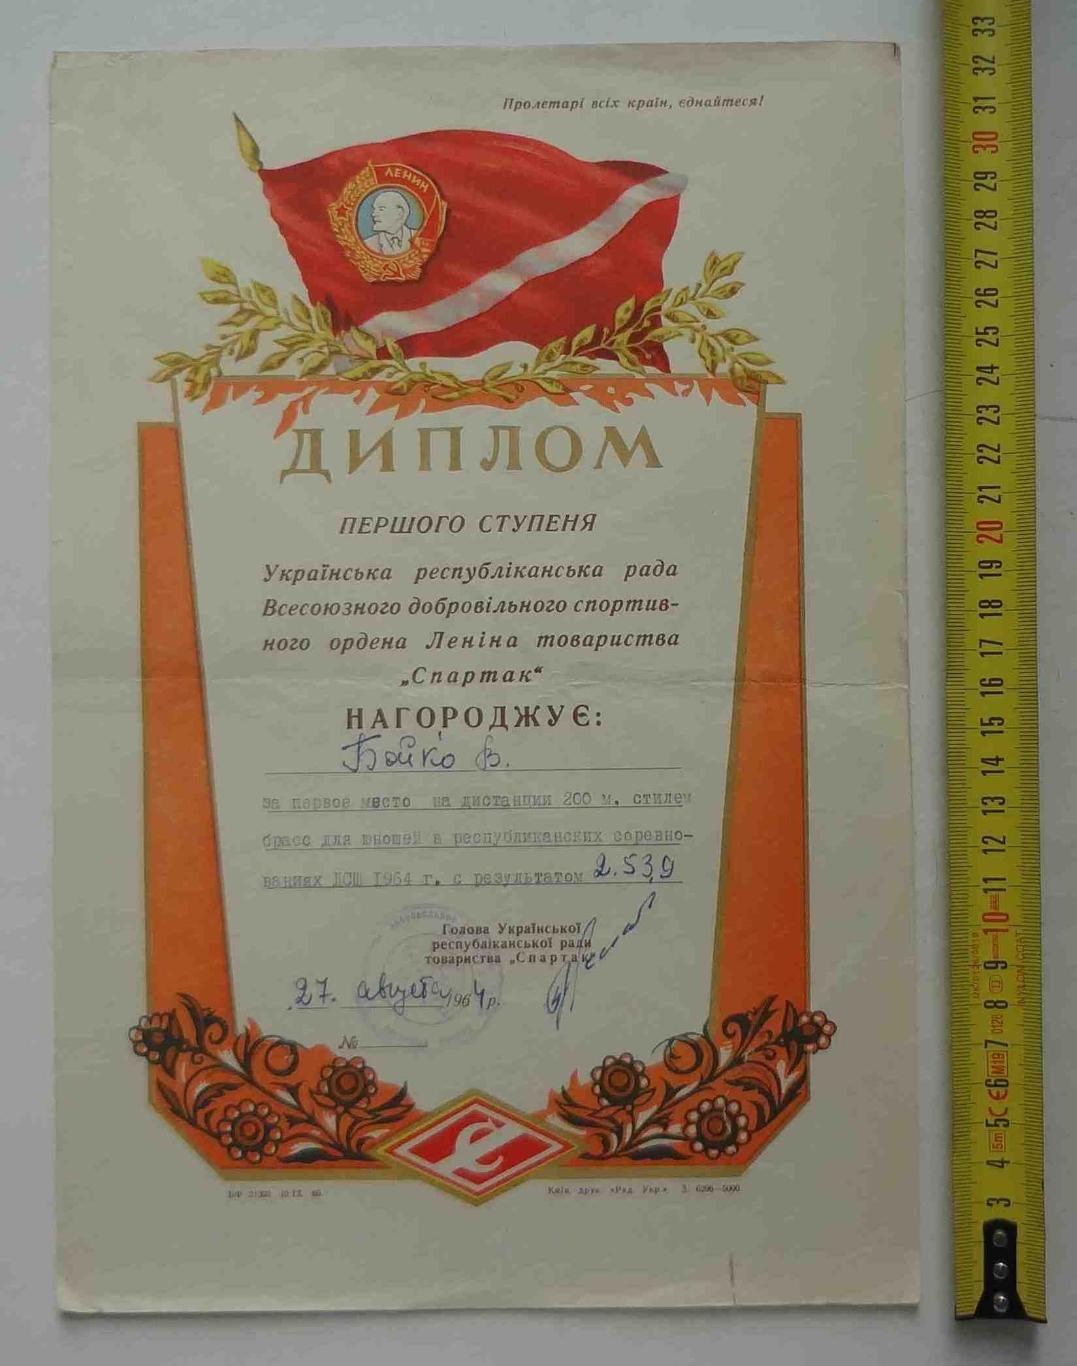 Диплом 1 степени Украинский республиканский совет ДСО Спартак 1964 плавание (11)